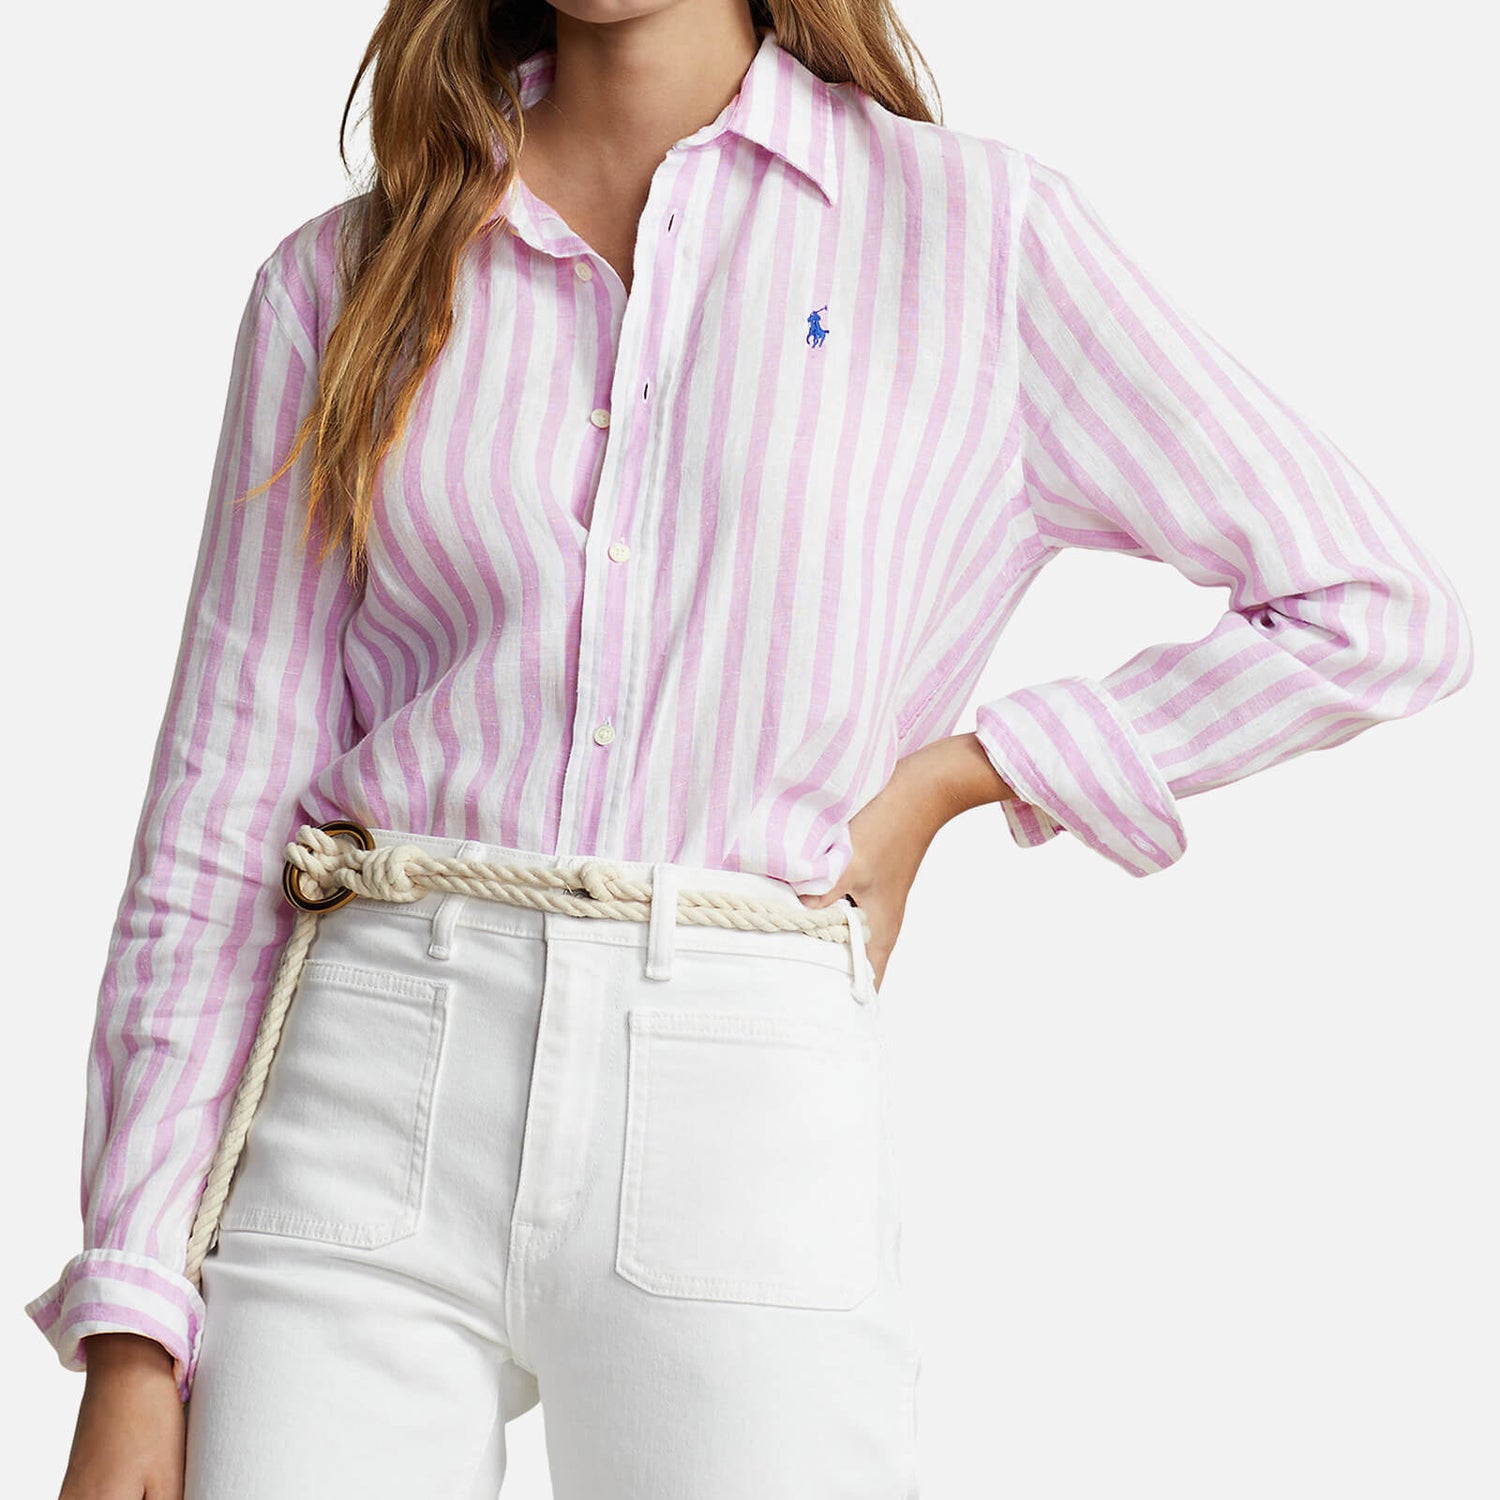 Polo Ralph Lauren Striped Linen Shirt - XS